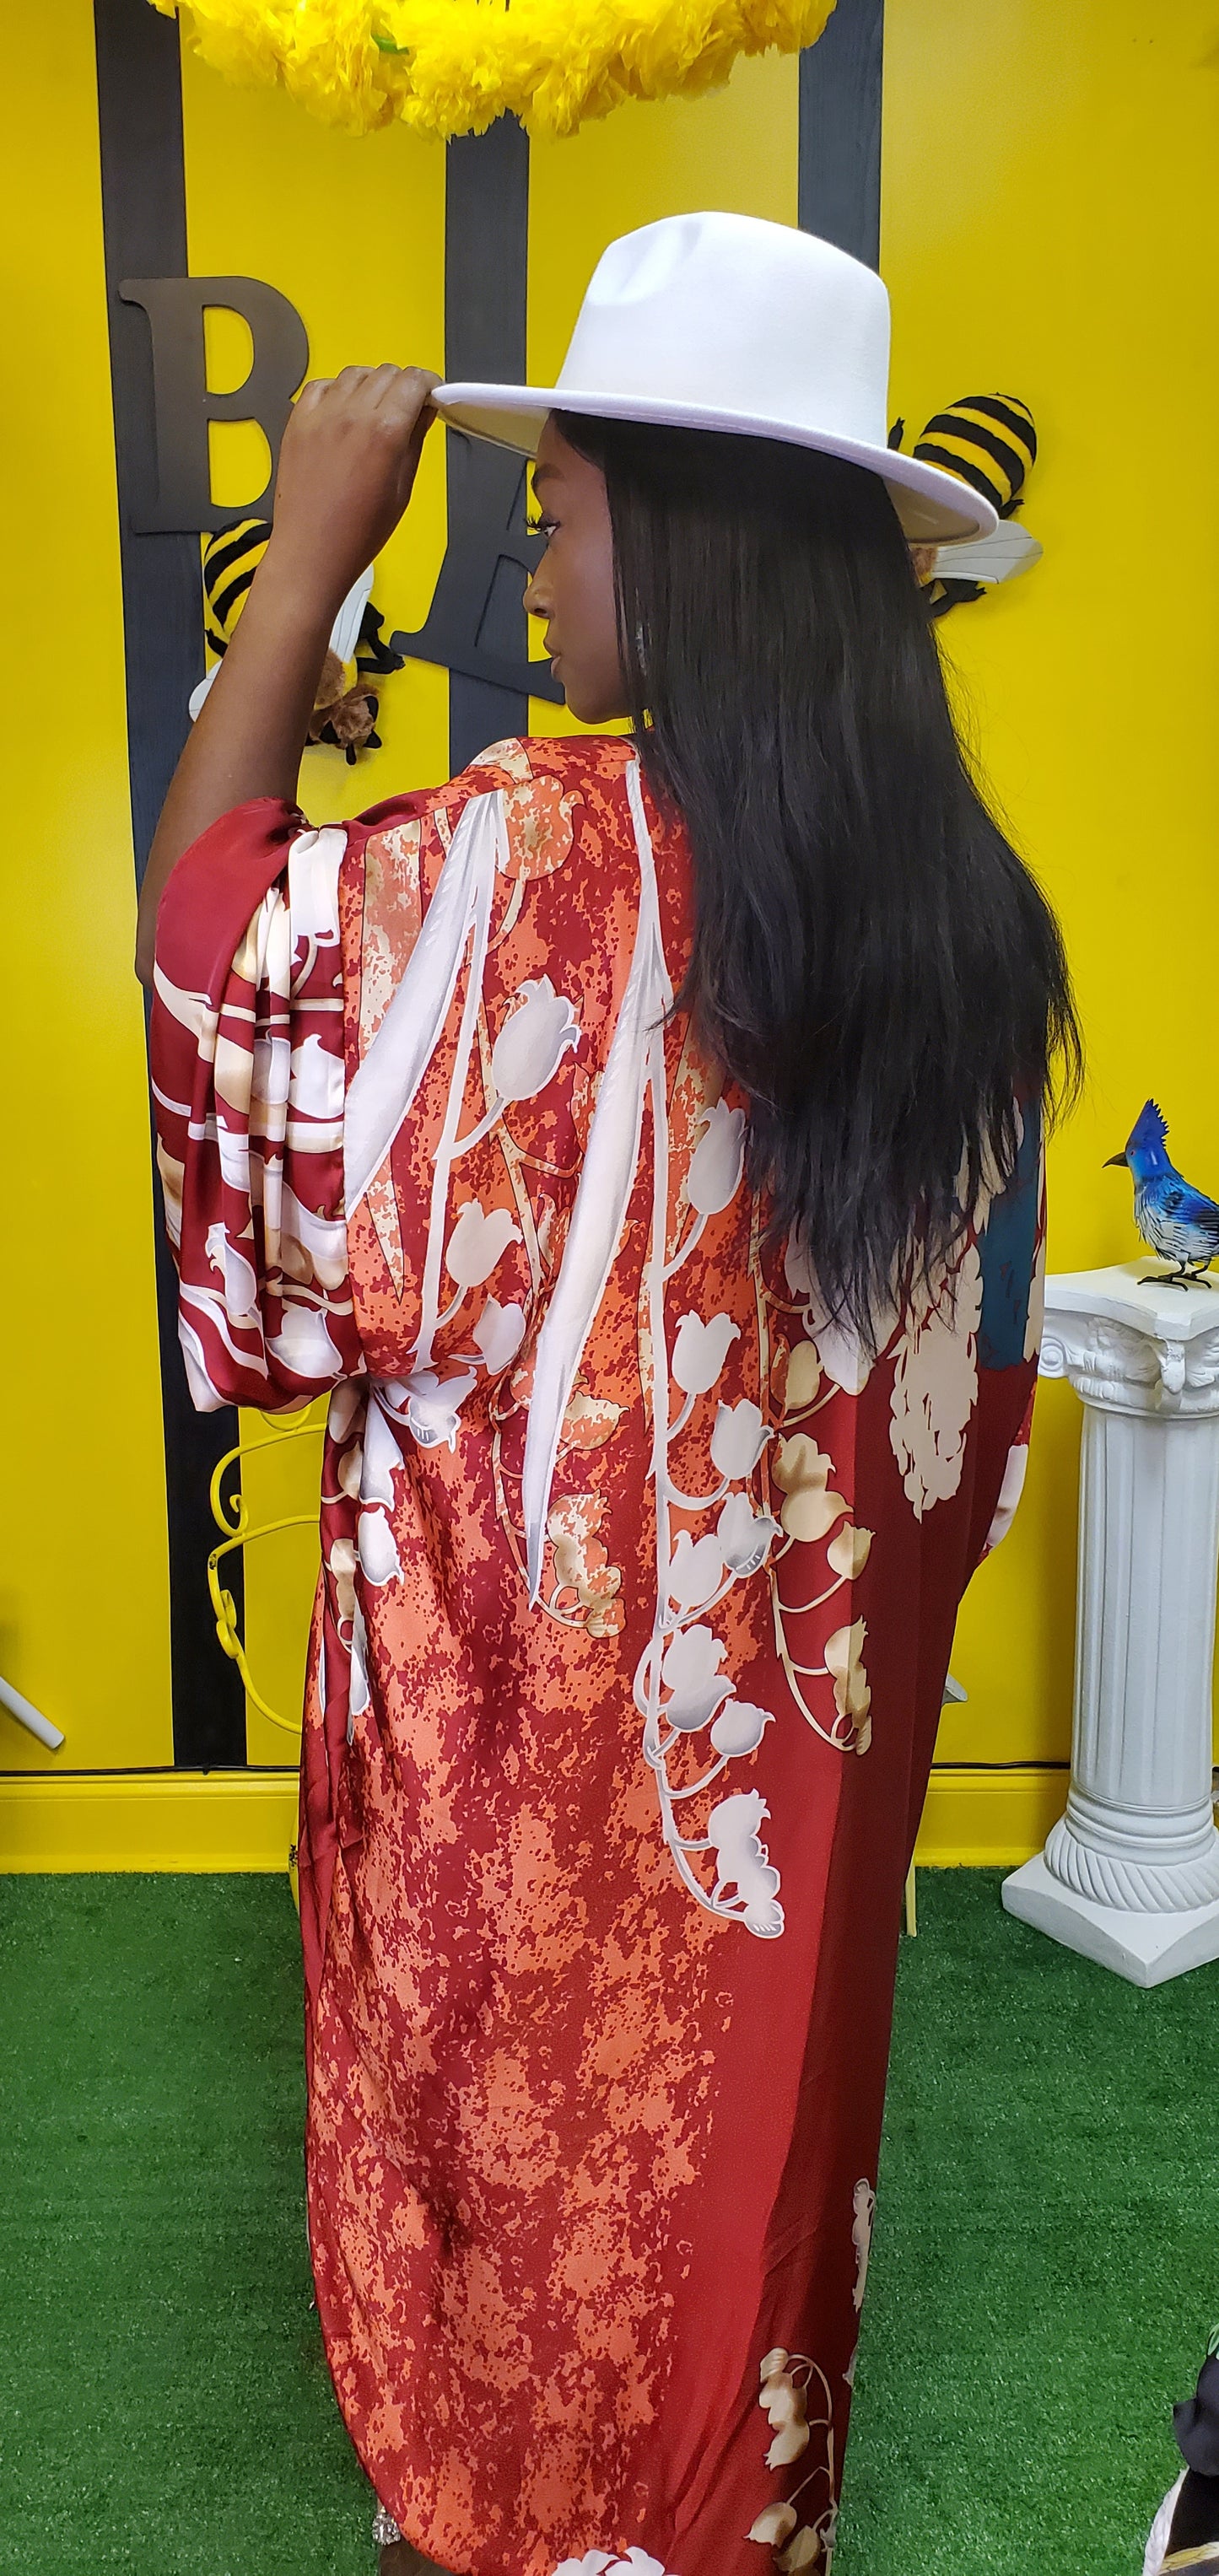 The "Ultimate Kimono"